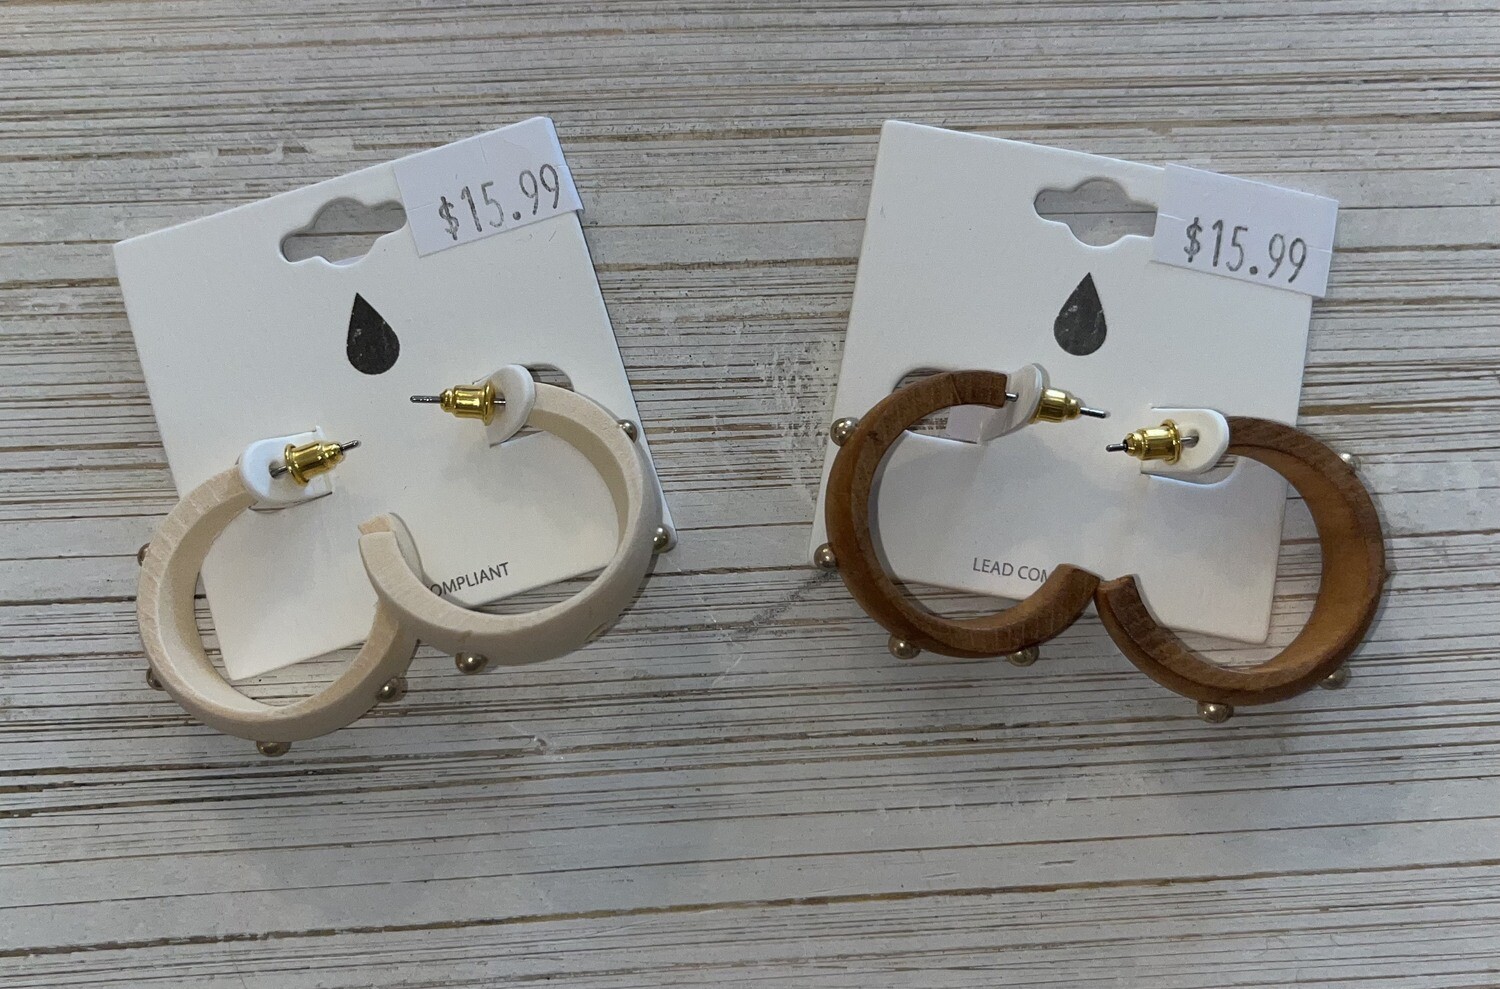 Wood Hoop Earrings